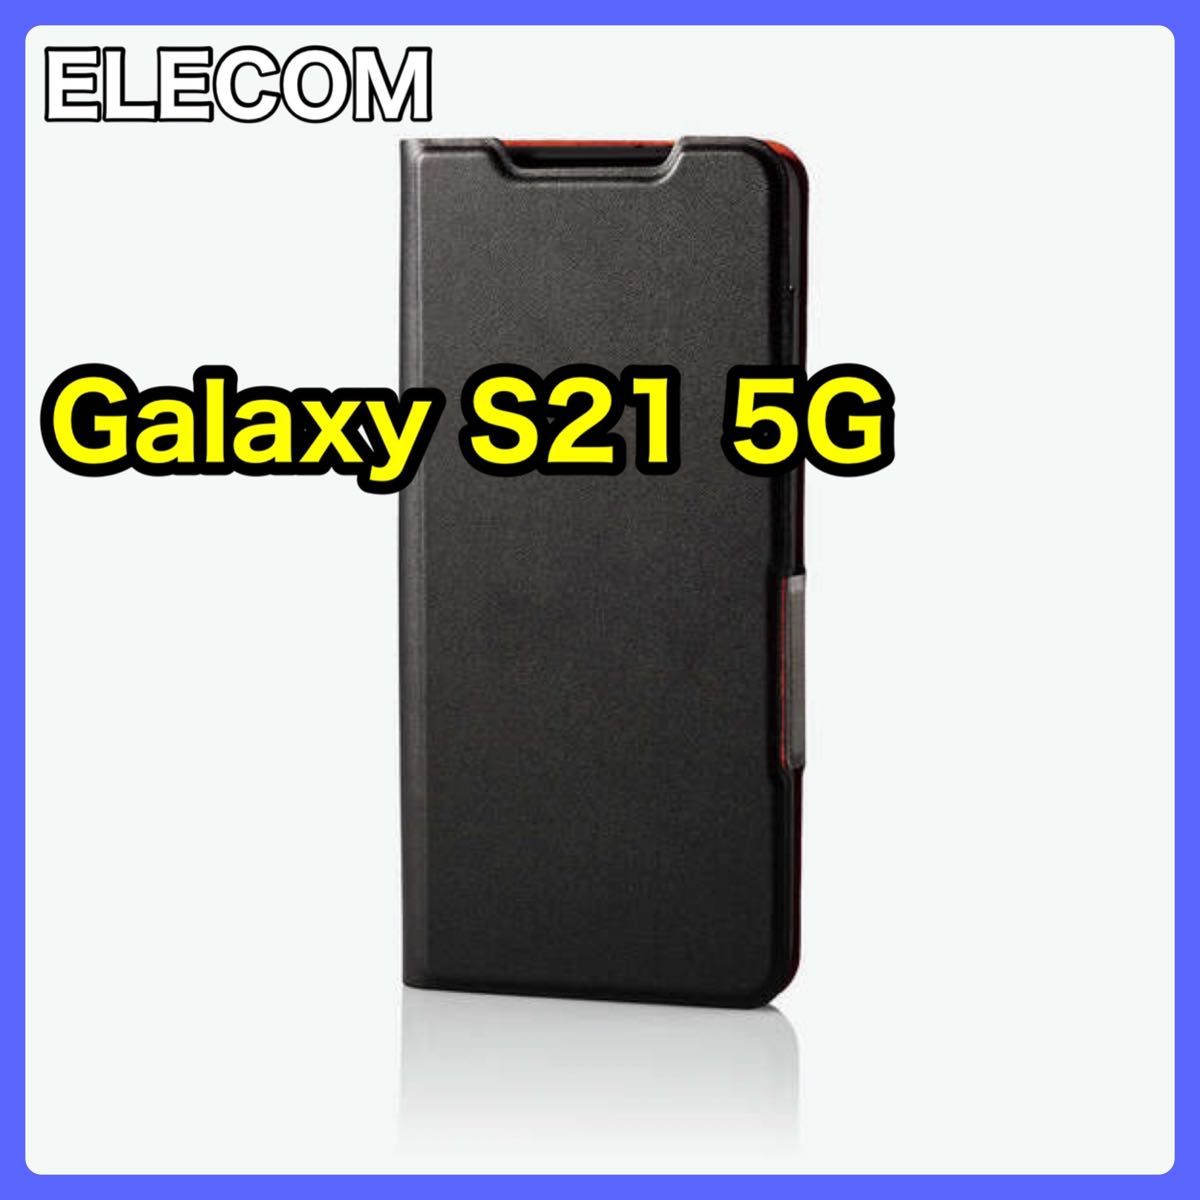 エレコム Galaxy S21 5G ソフトレザーケース